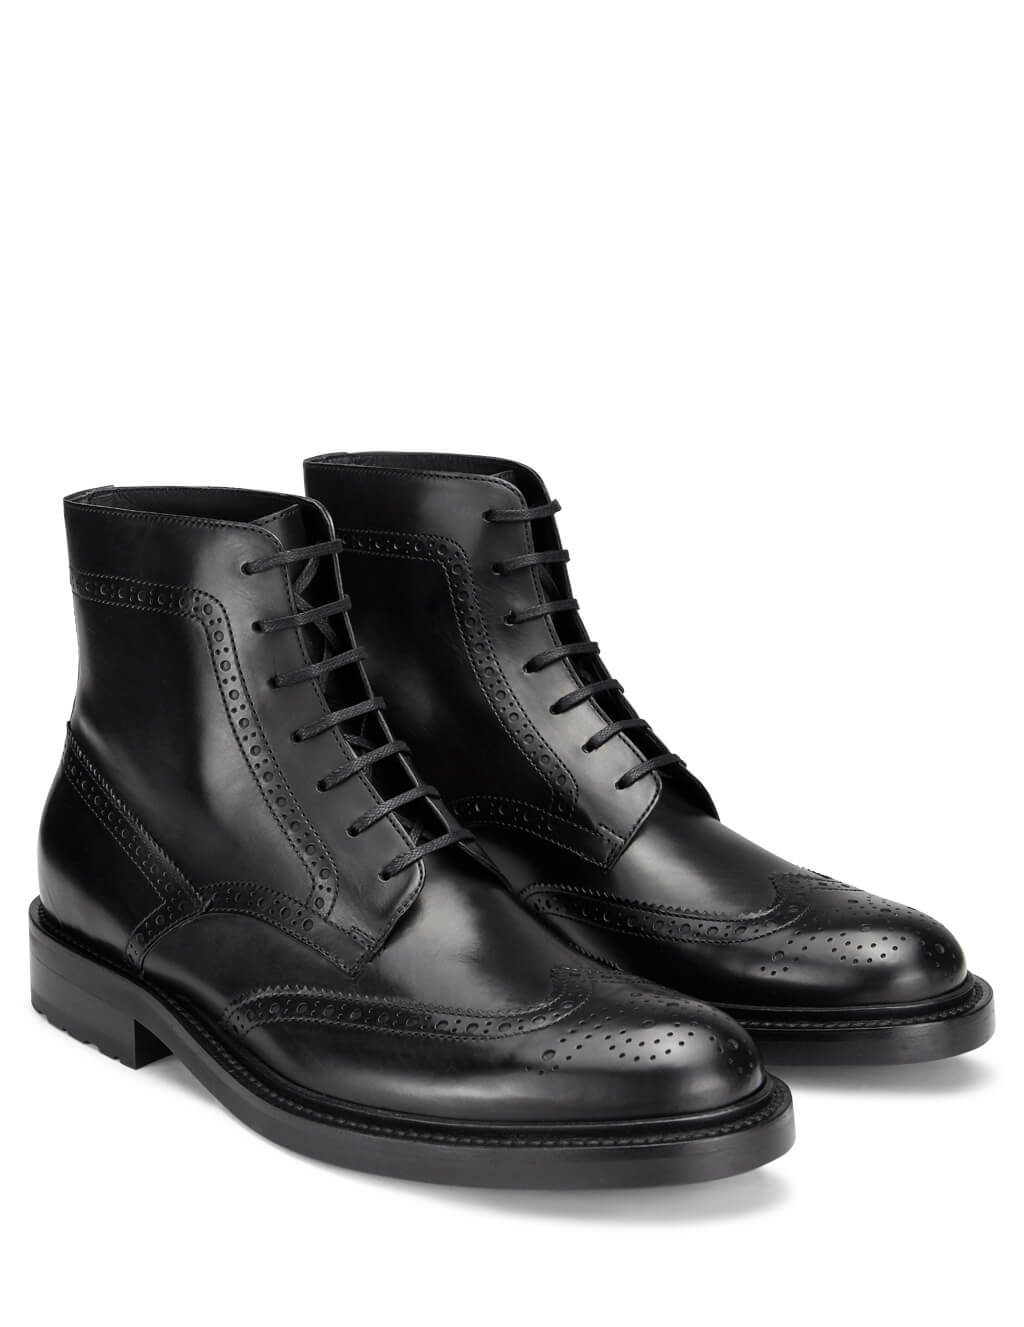 boots similar to saint laurent